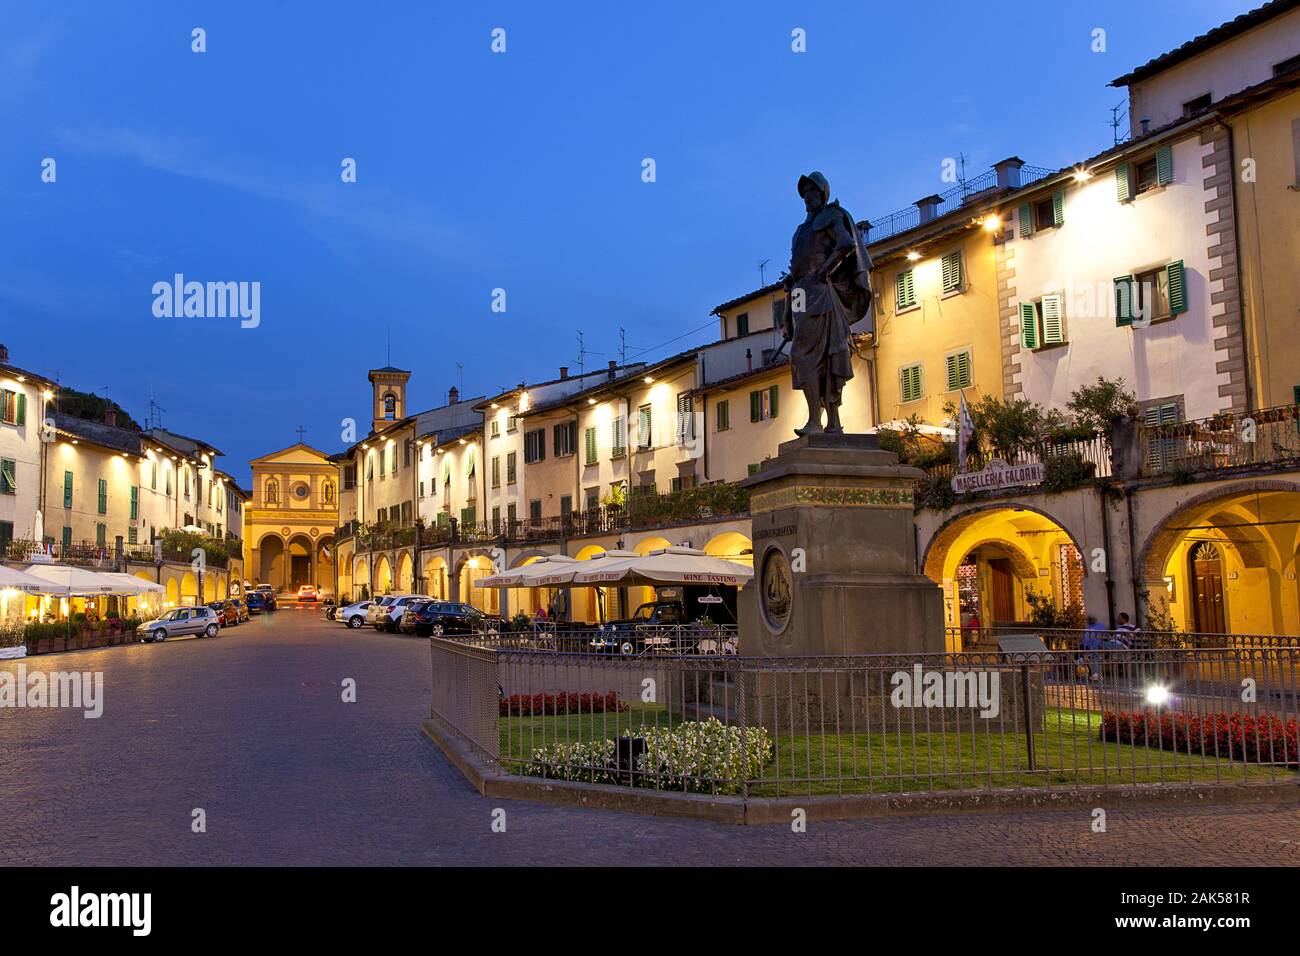 Greve in Chianti: Piazza Giacomo Matteotti mit Giovanni da Verrazzano monumento, am Abend, Toskana | Utilizzo di tutto il mondo Foto Stock